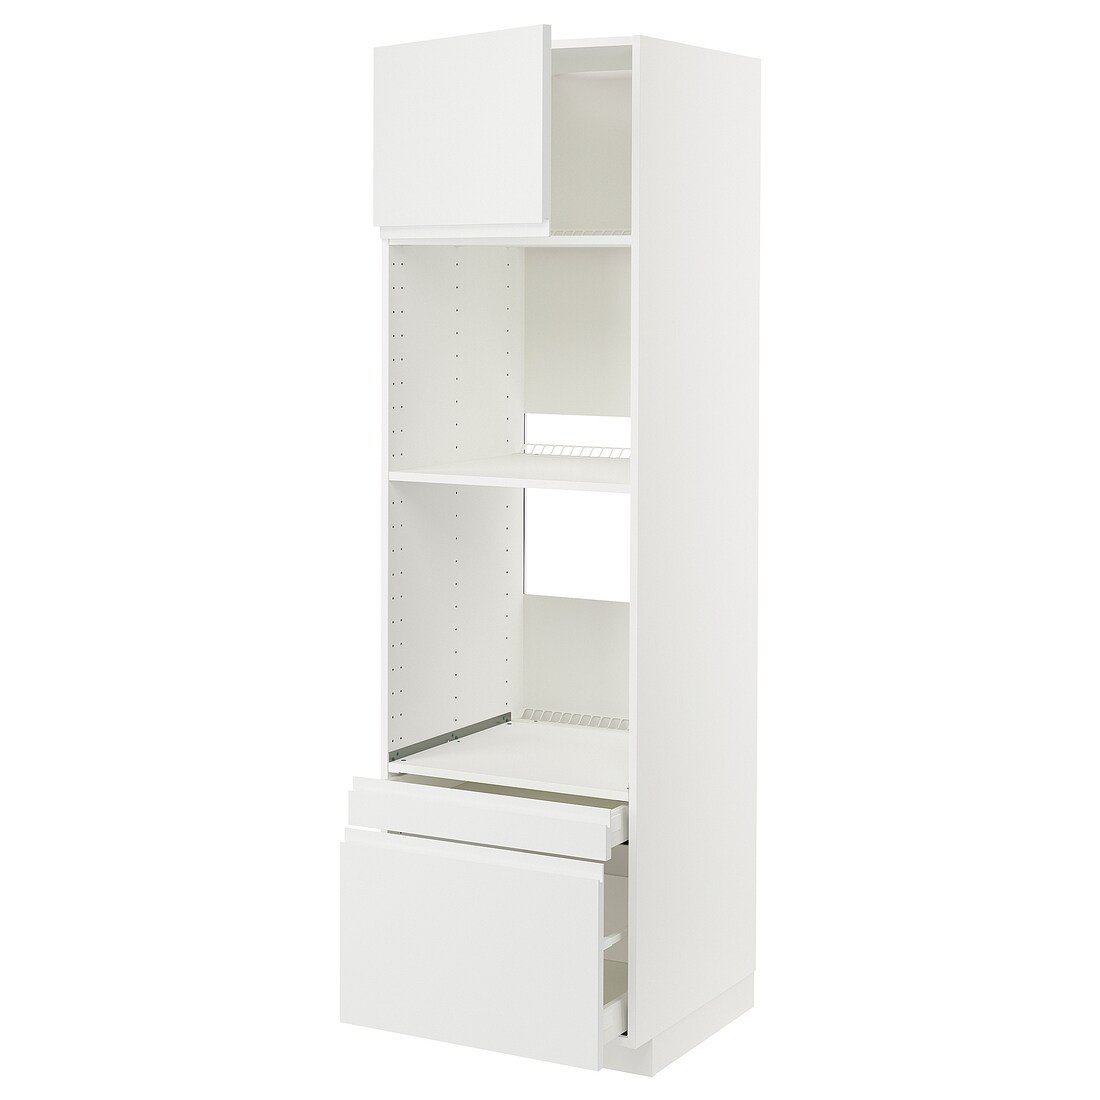 IKEA METOD МЕТОД / MAXIMERA МАКСИМЕРА Высокий шкаф для духовки комби с дверцей / ящиками, белый / Voxtorp матовый белый, 60x60x200 см 19457933 | 194.579.33